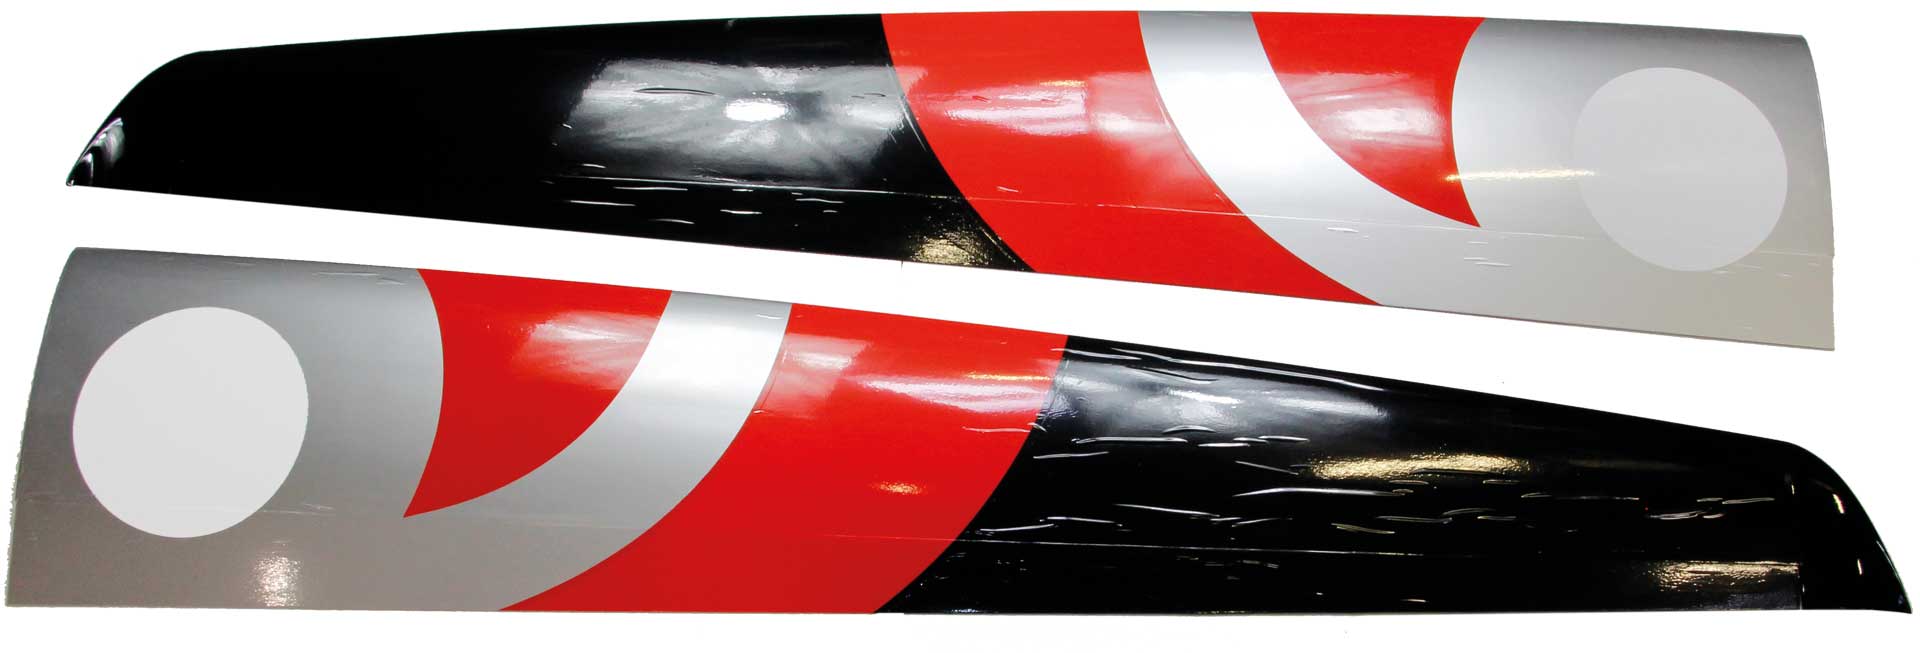 Robbe Modellsport Kit de surface extérieure Cyclone XT 6,2m B-Ware, car film fortement plié